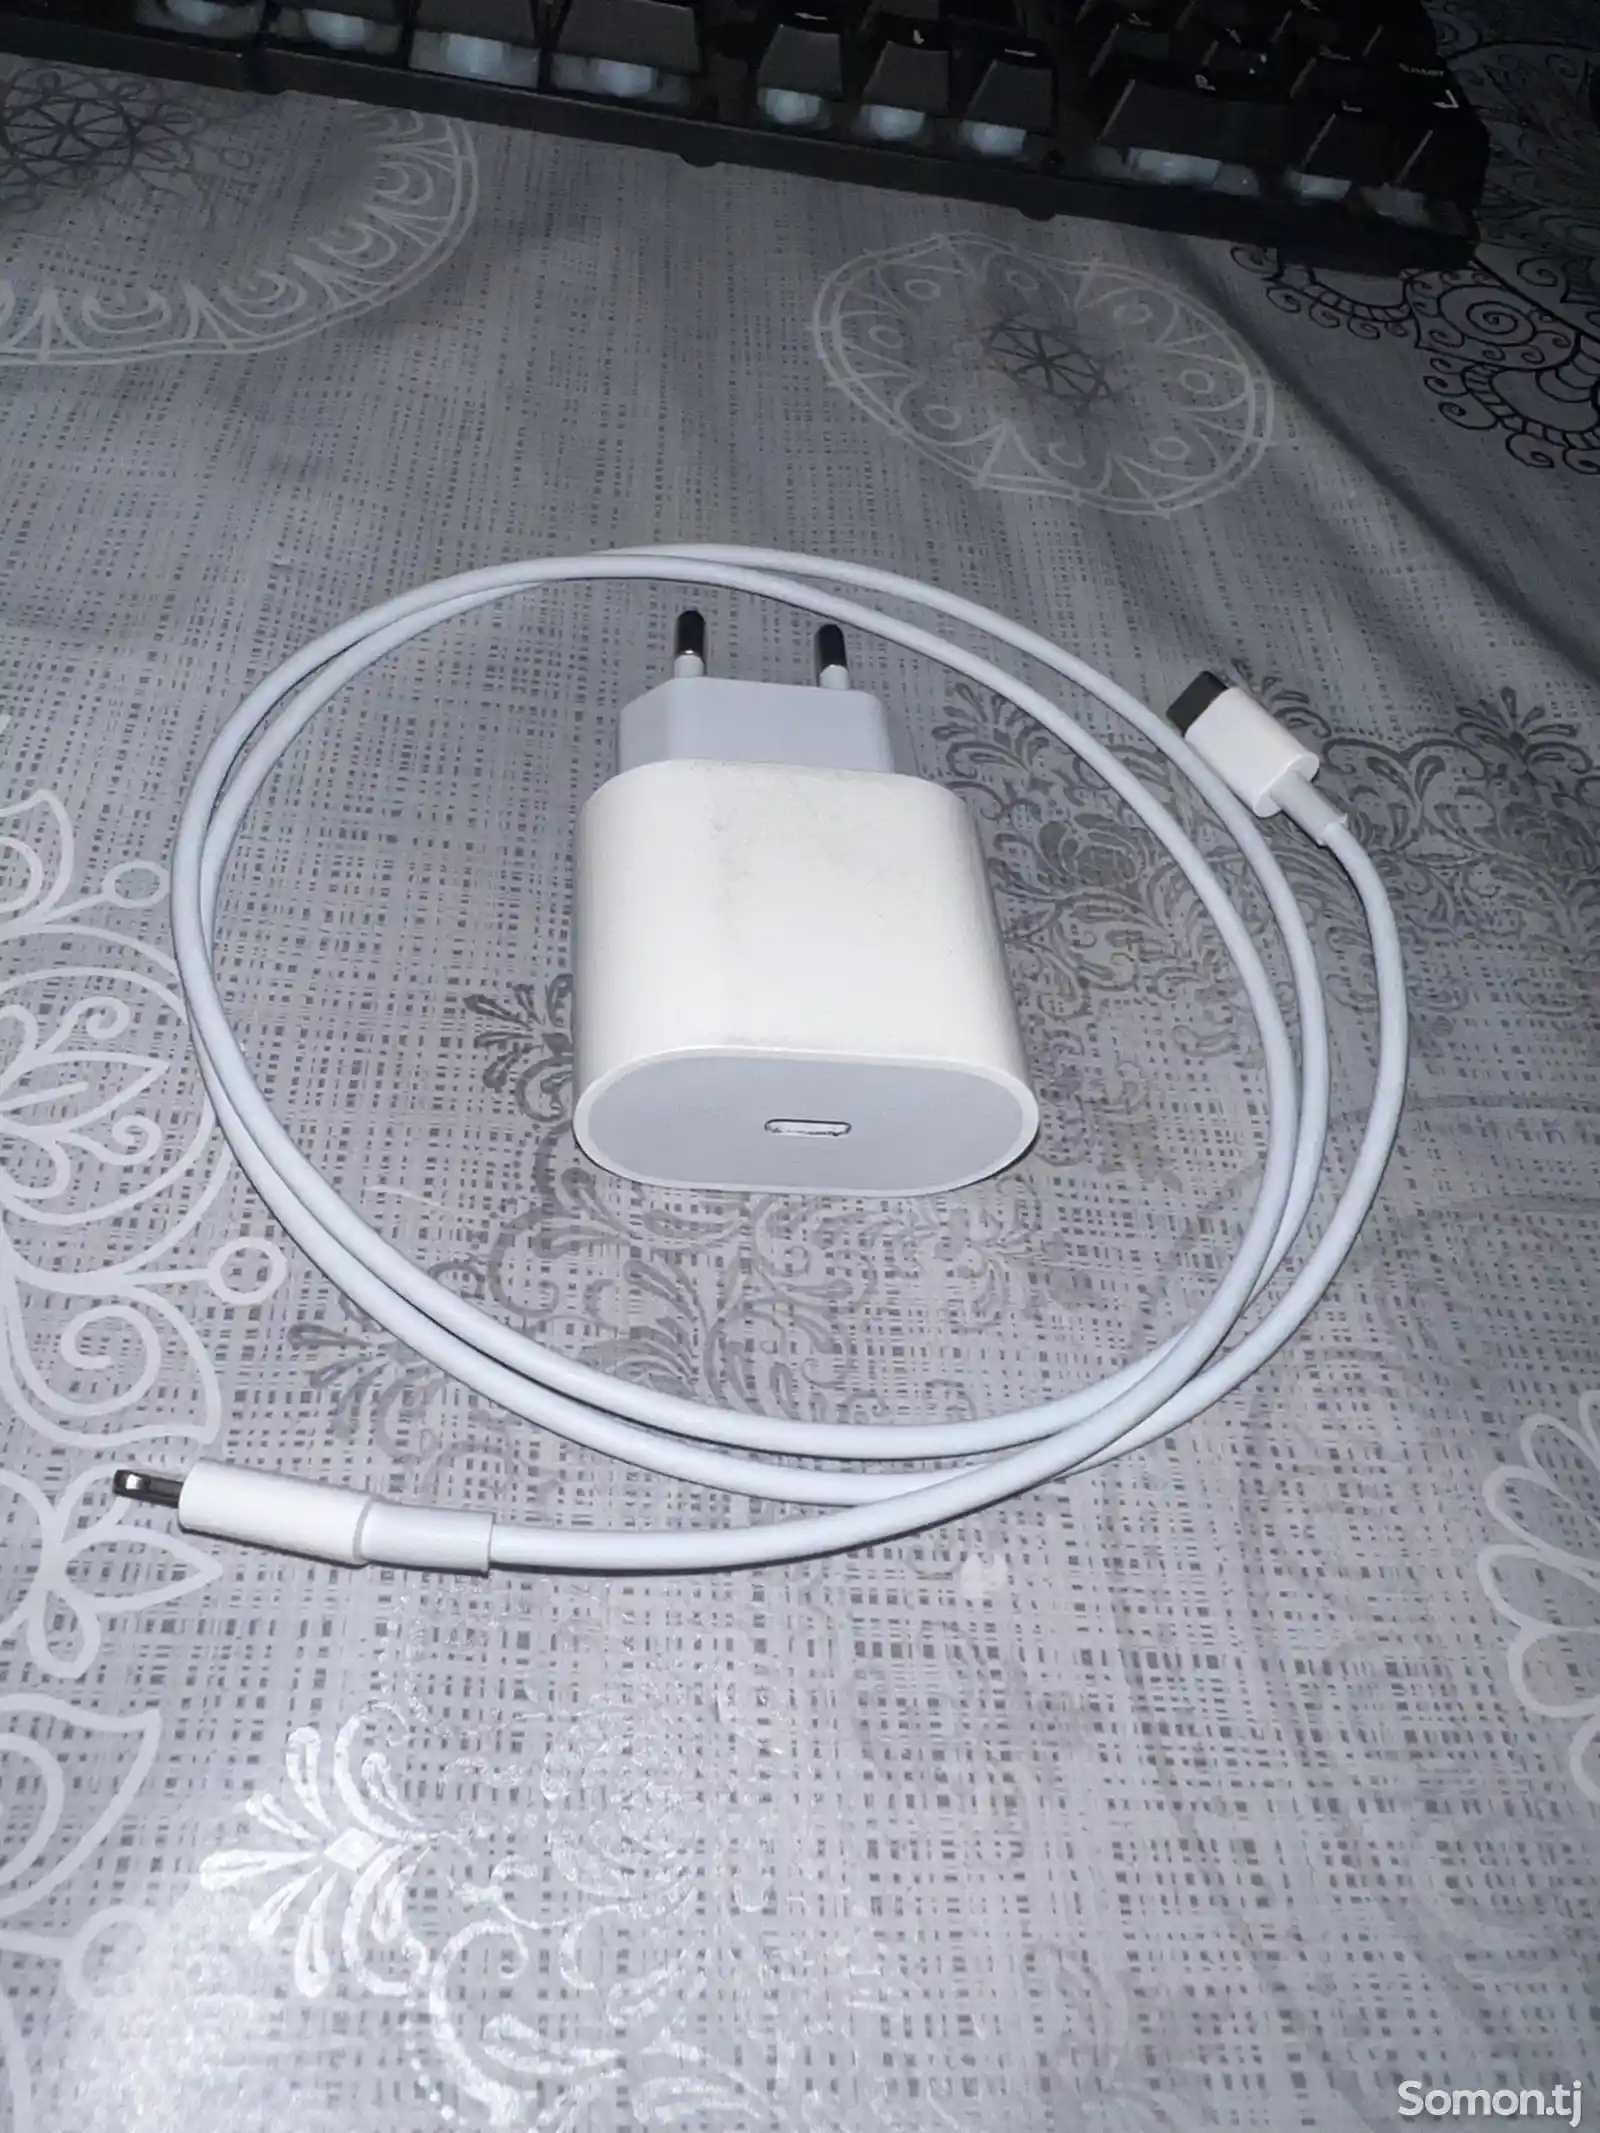 Зарядное устройство от Apple iPhone-1